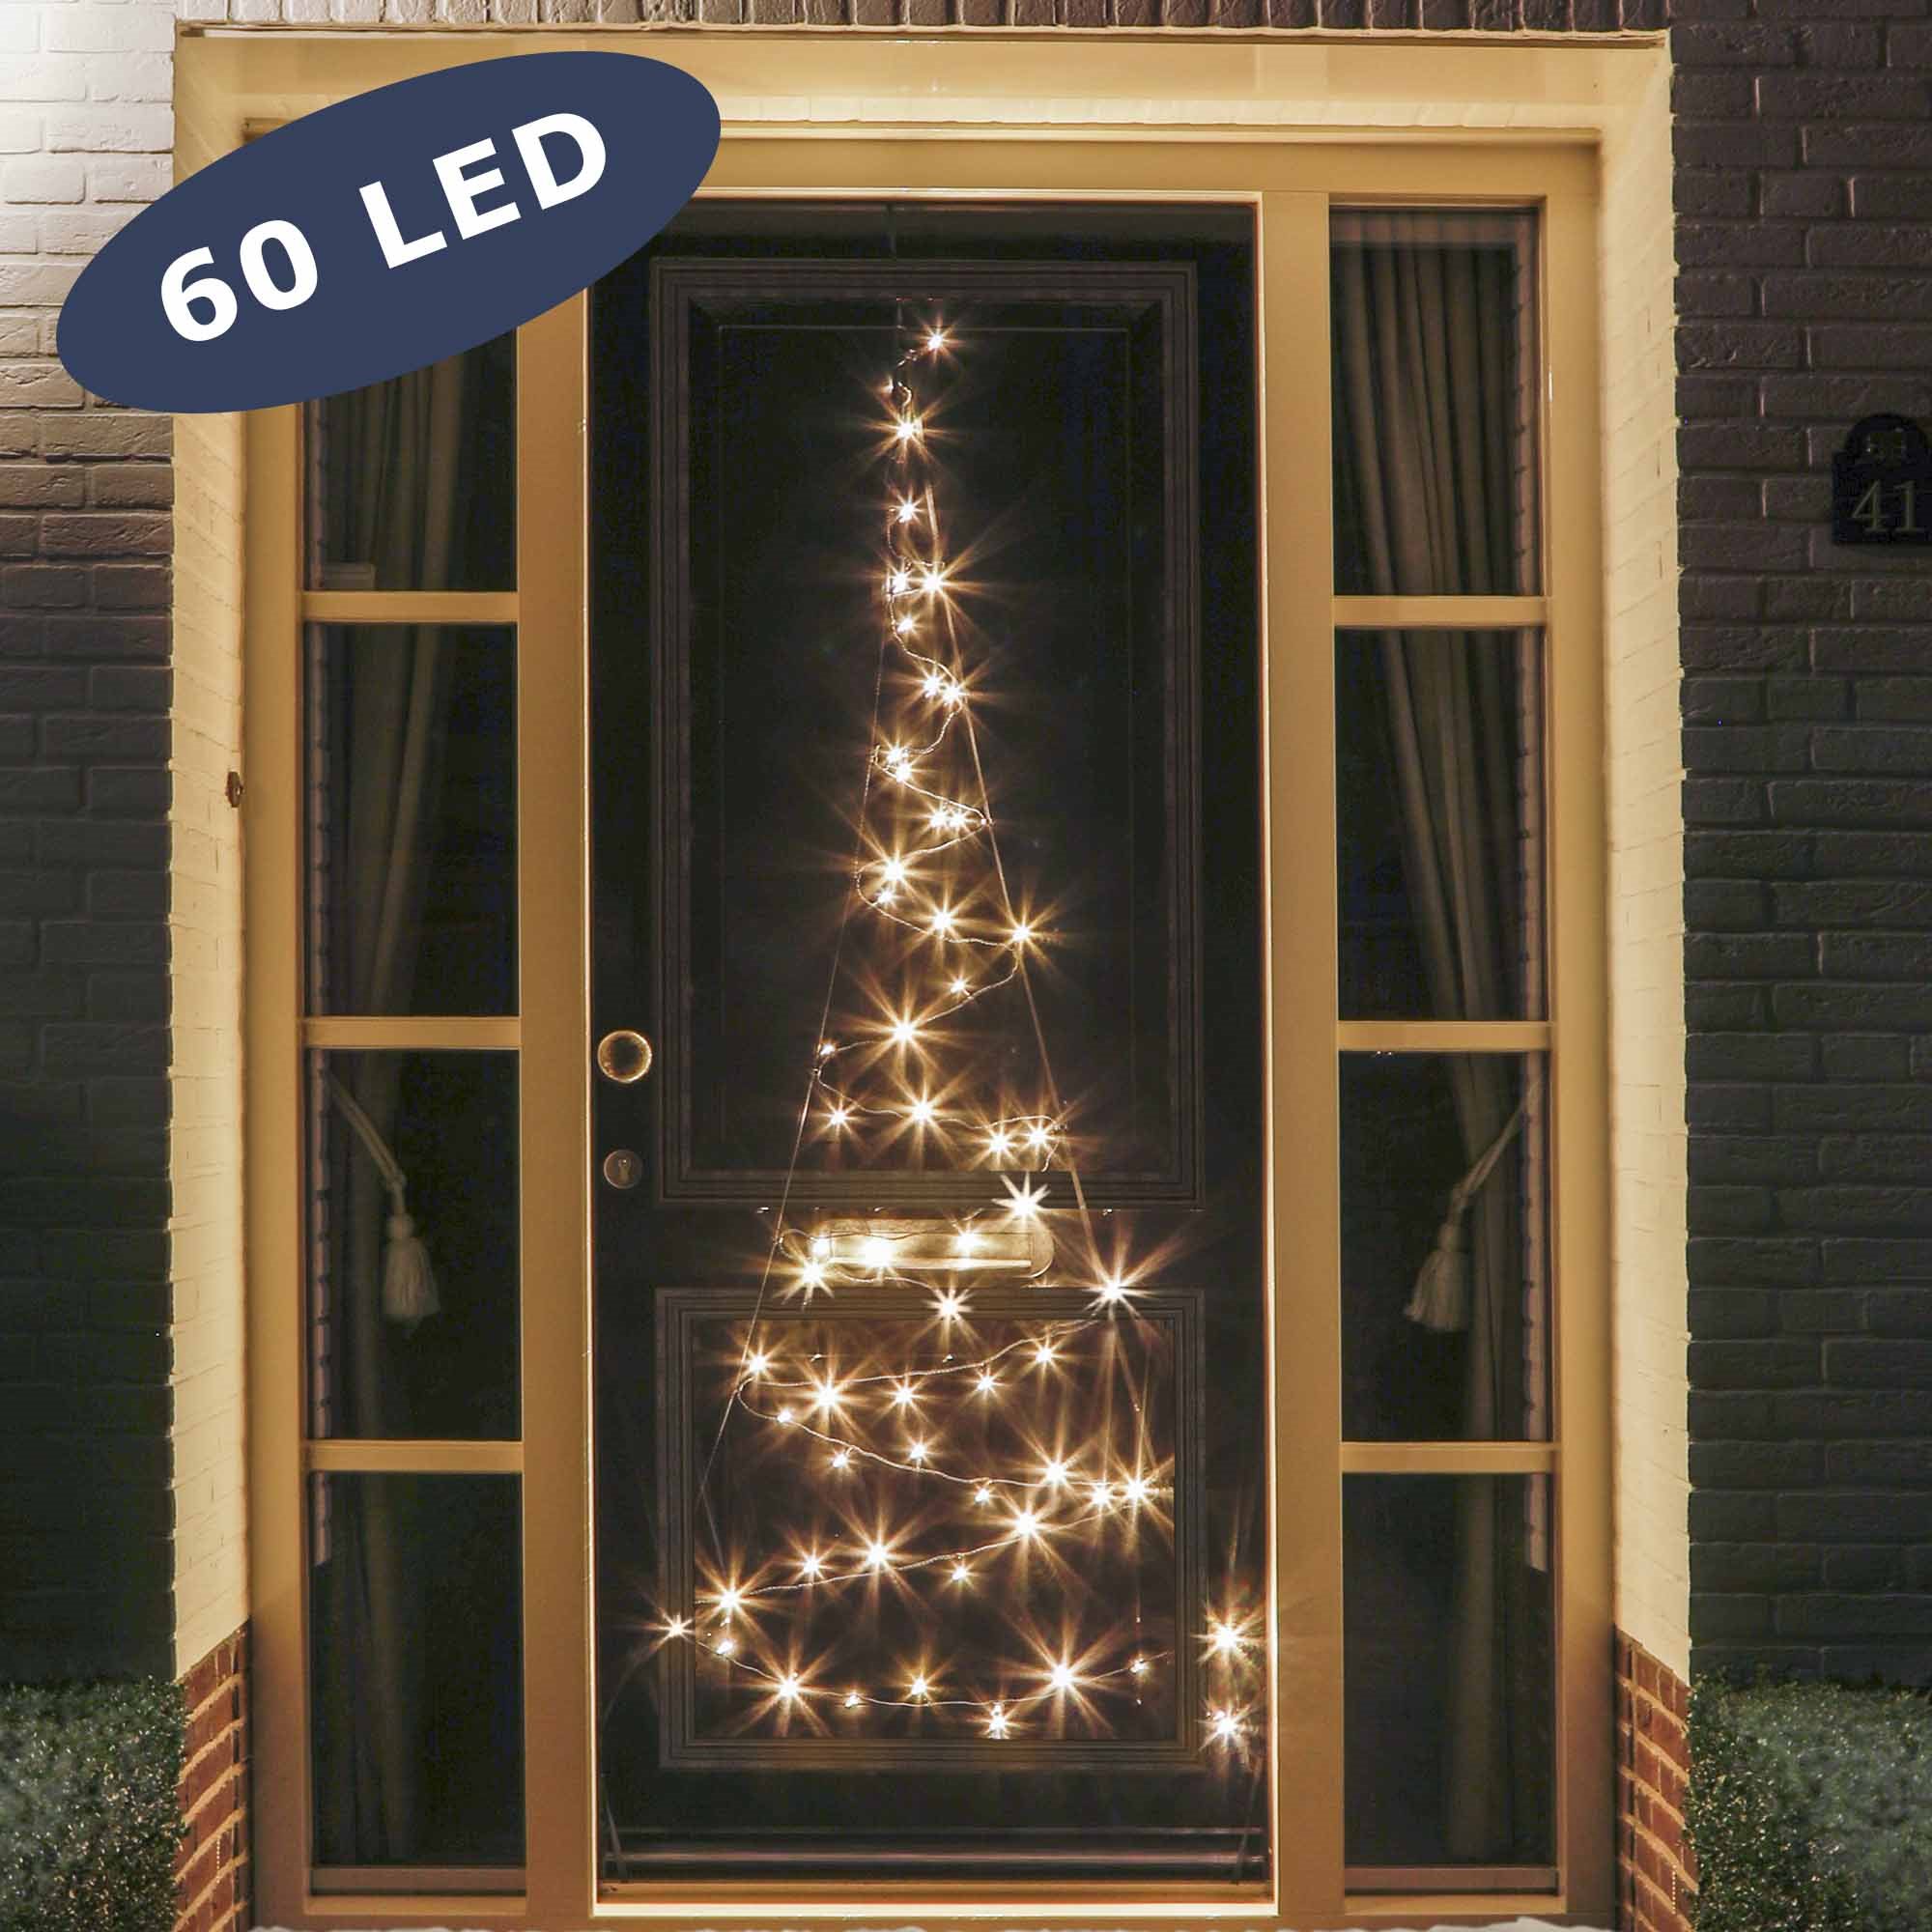 LED juletræ til dør - 60 LED'er i varm hvid - 2,1 meter